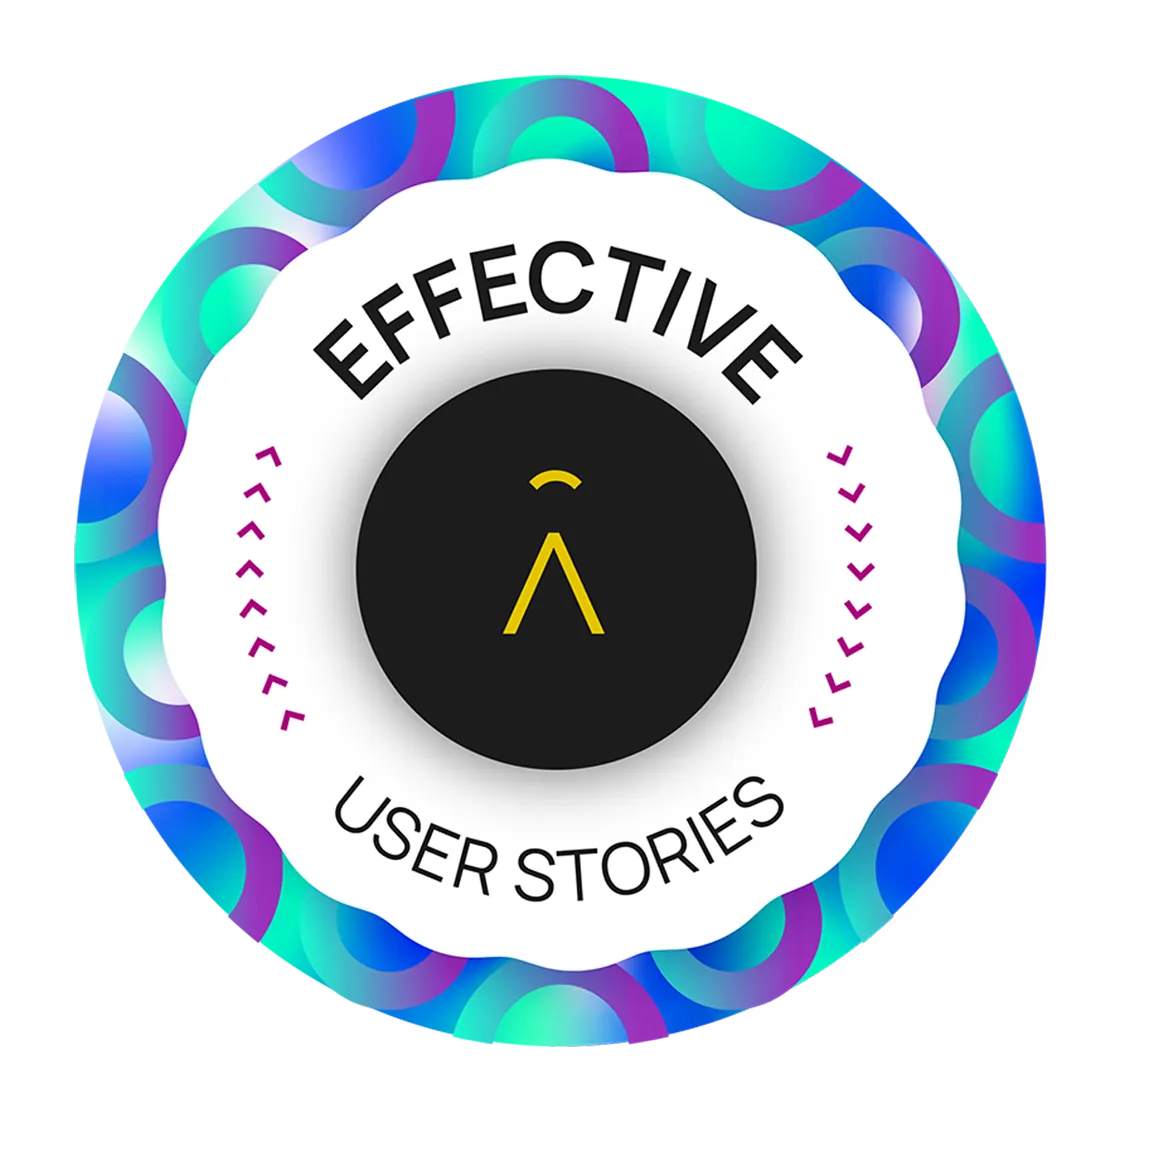 Effective User Stories